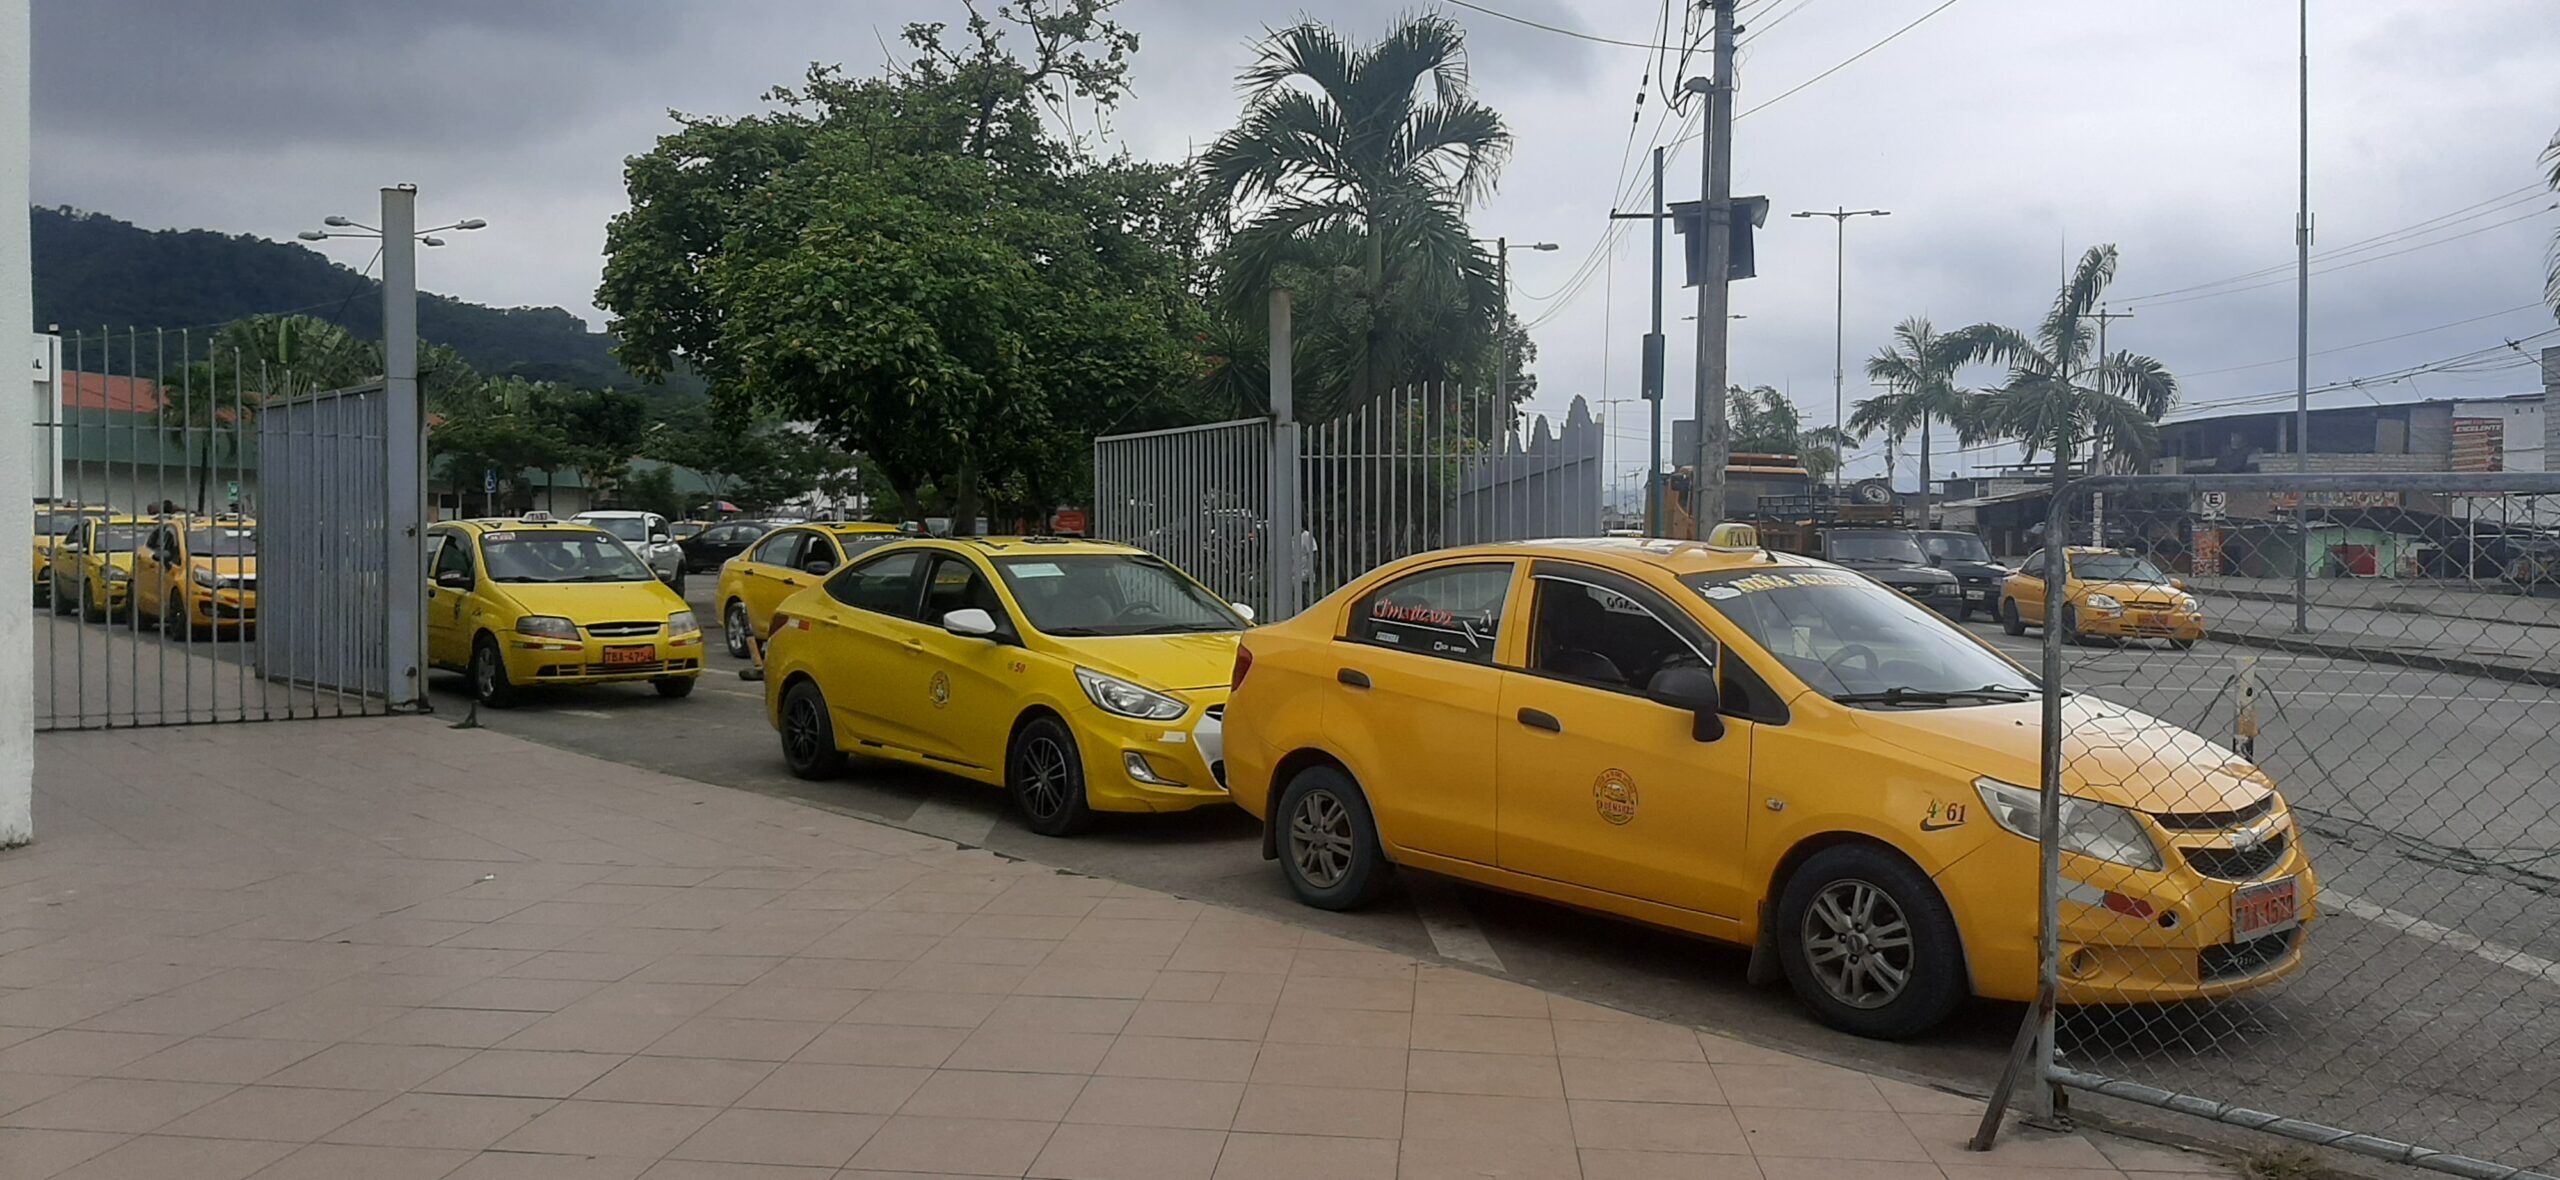 Sector del taxismo expuesto a la delincuencia